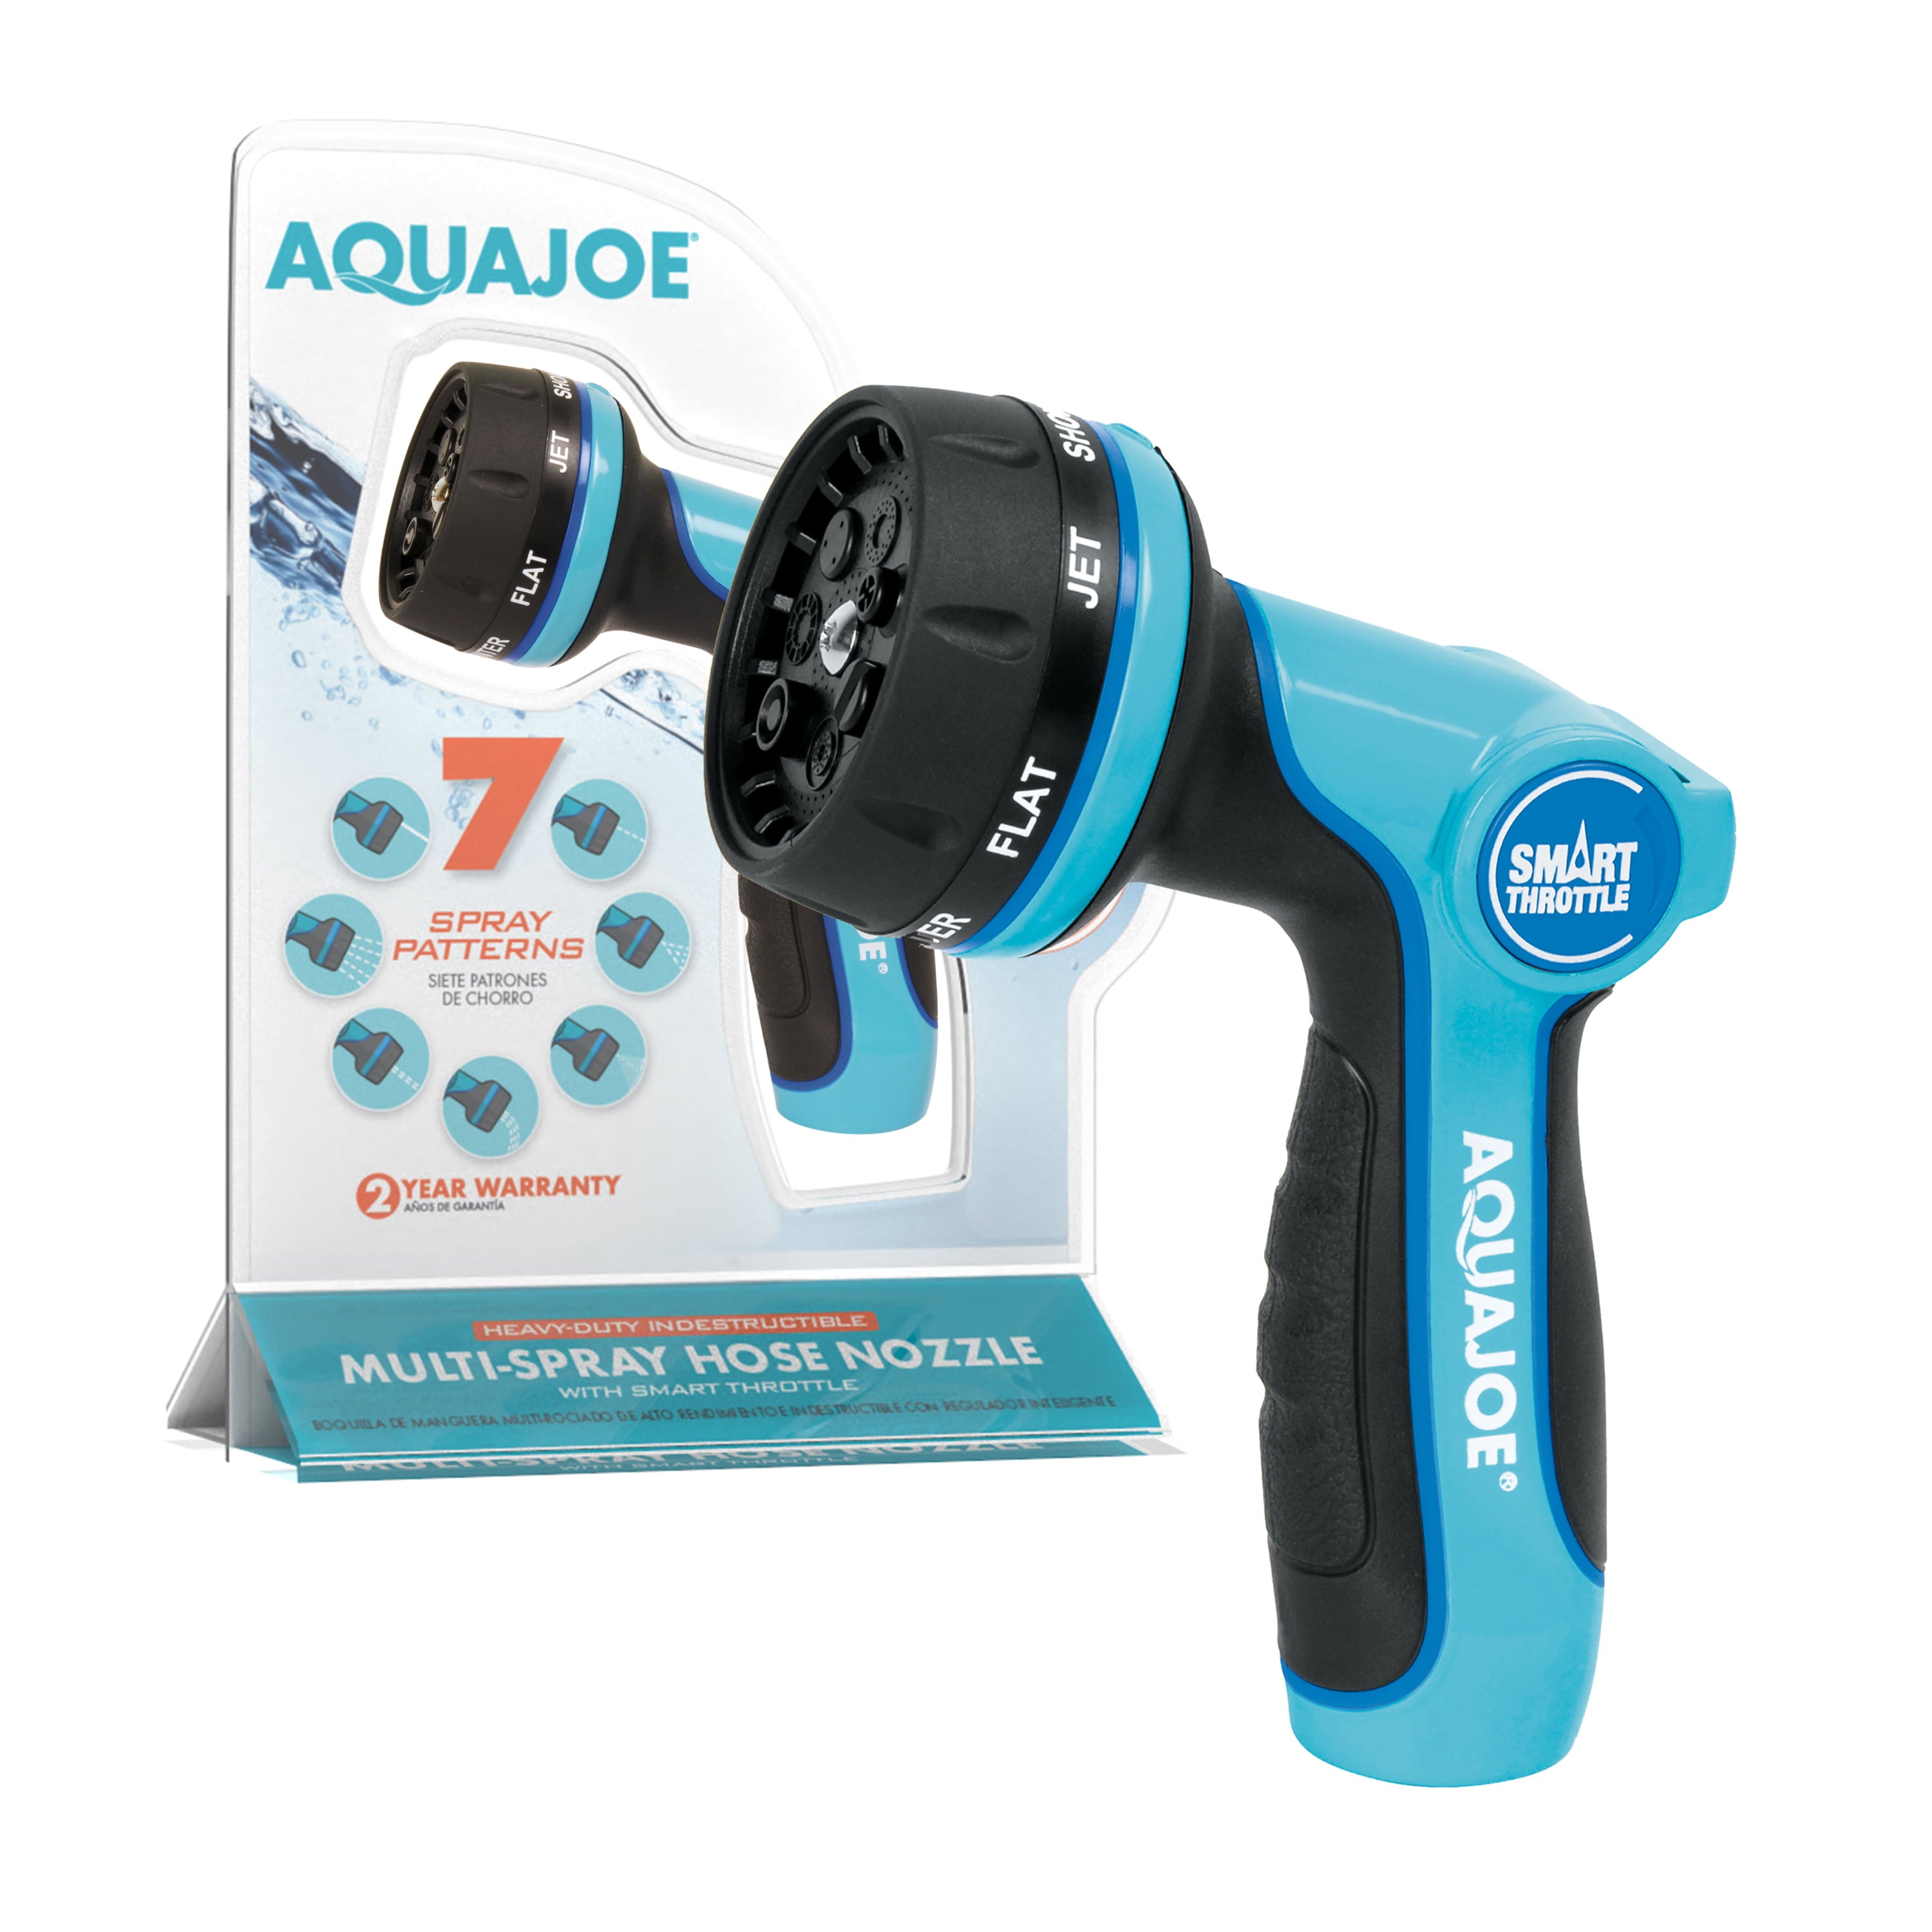 Aqua Joe Heavy-Duty Multi-Function Hose Nozzle W/ Smart Throttle， 7 Spray Patterns